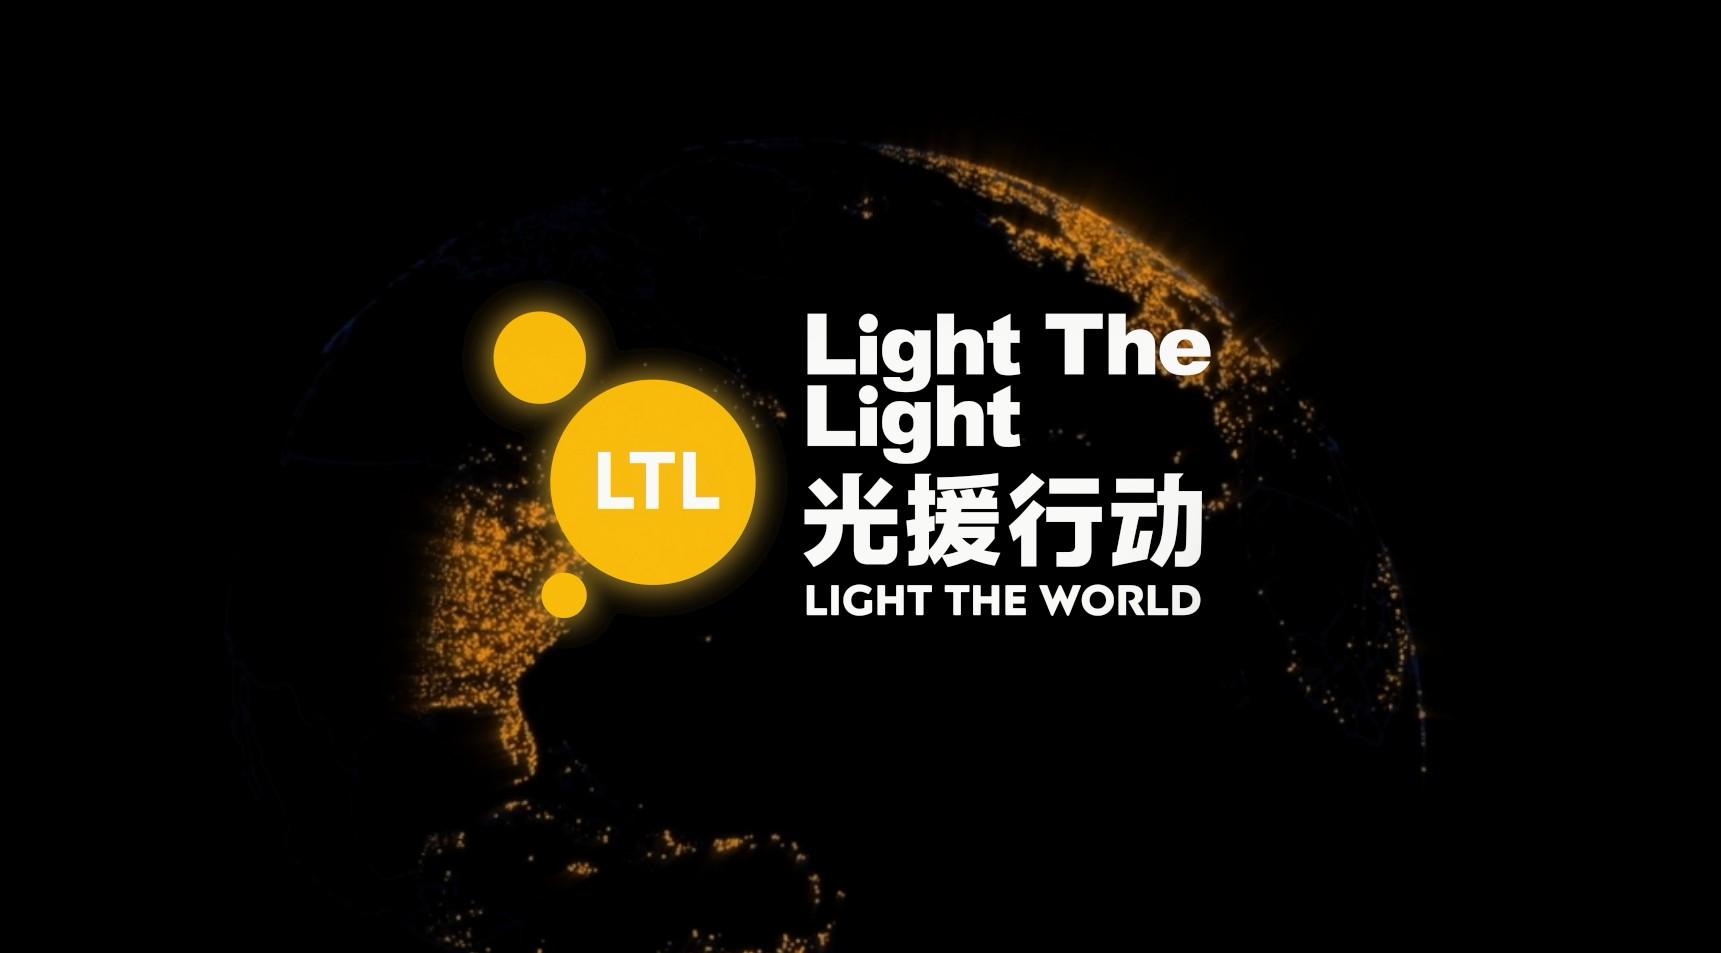 网易云音乐#Light The Light 光援行动#公益活动纪录片